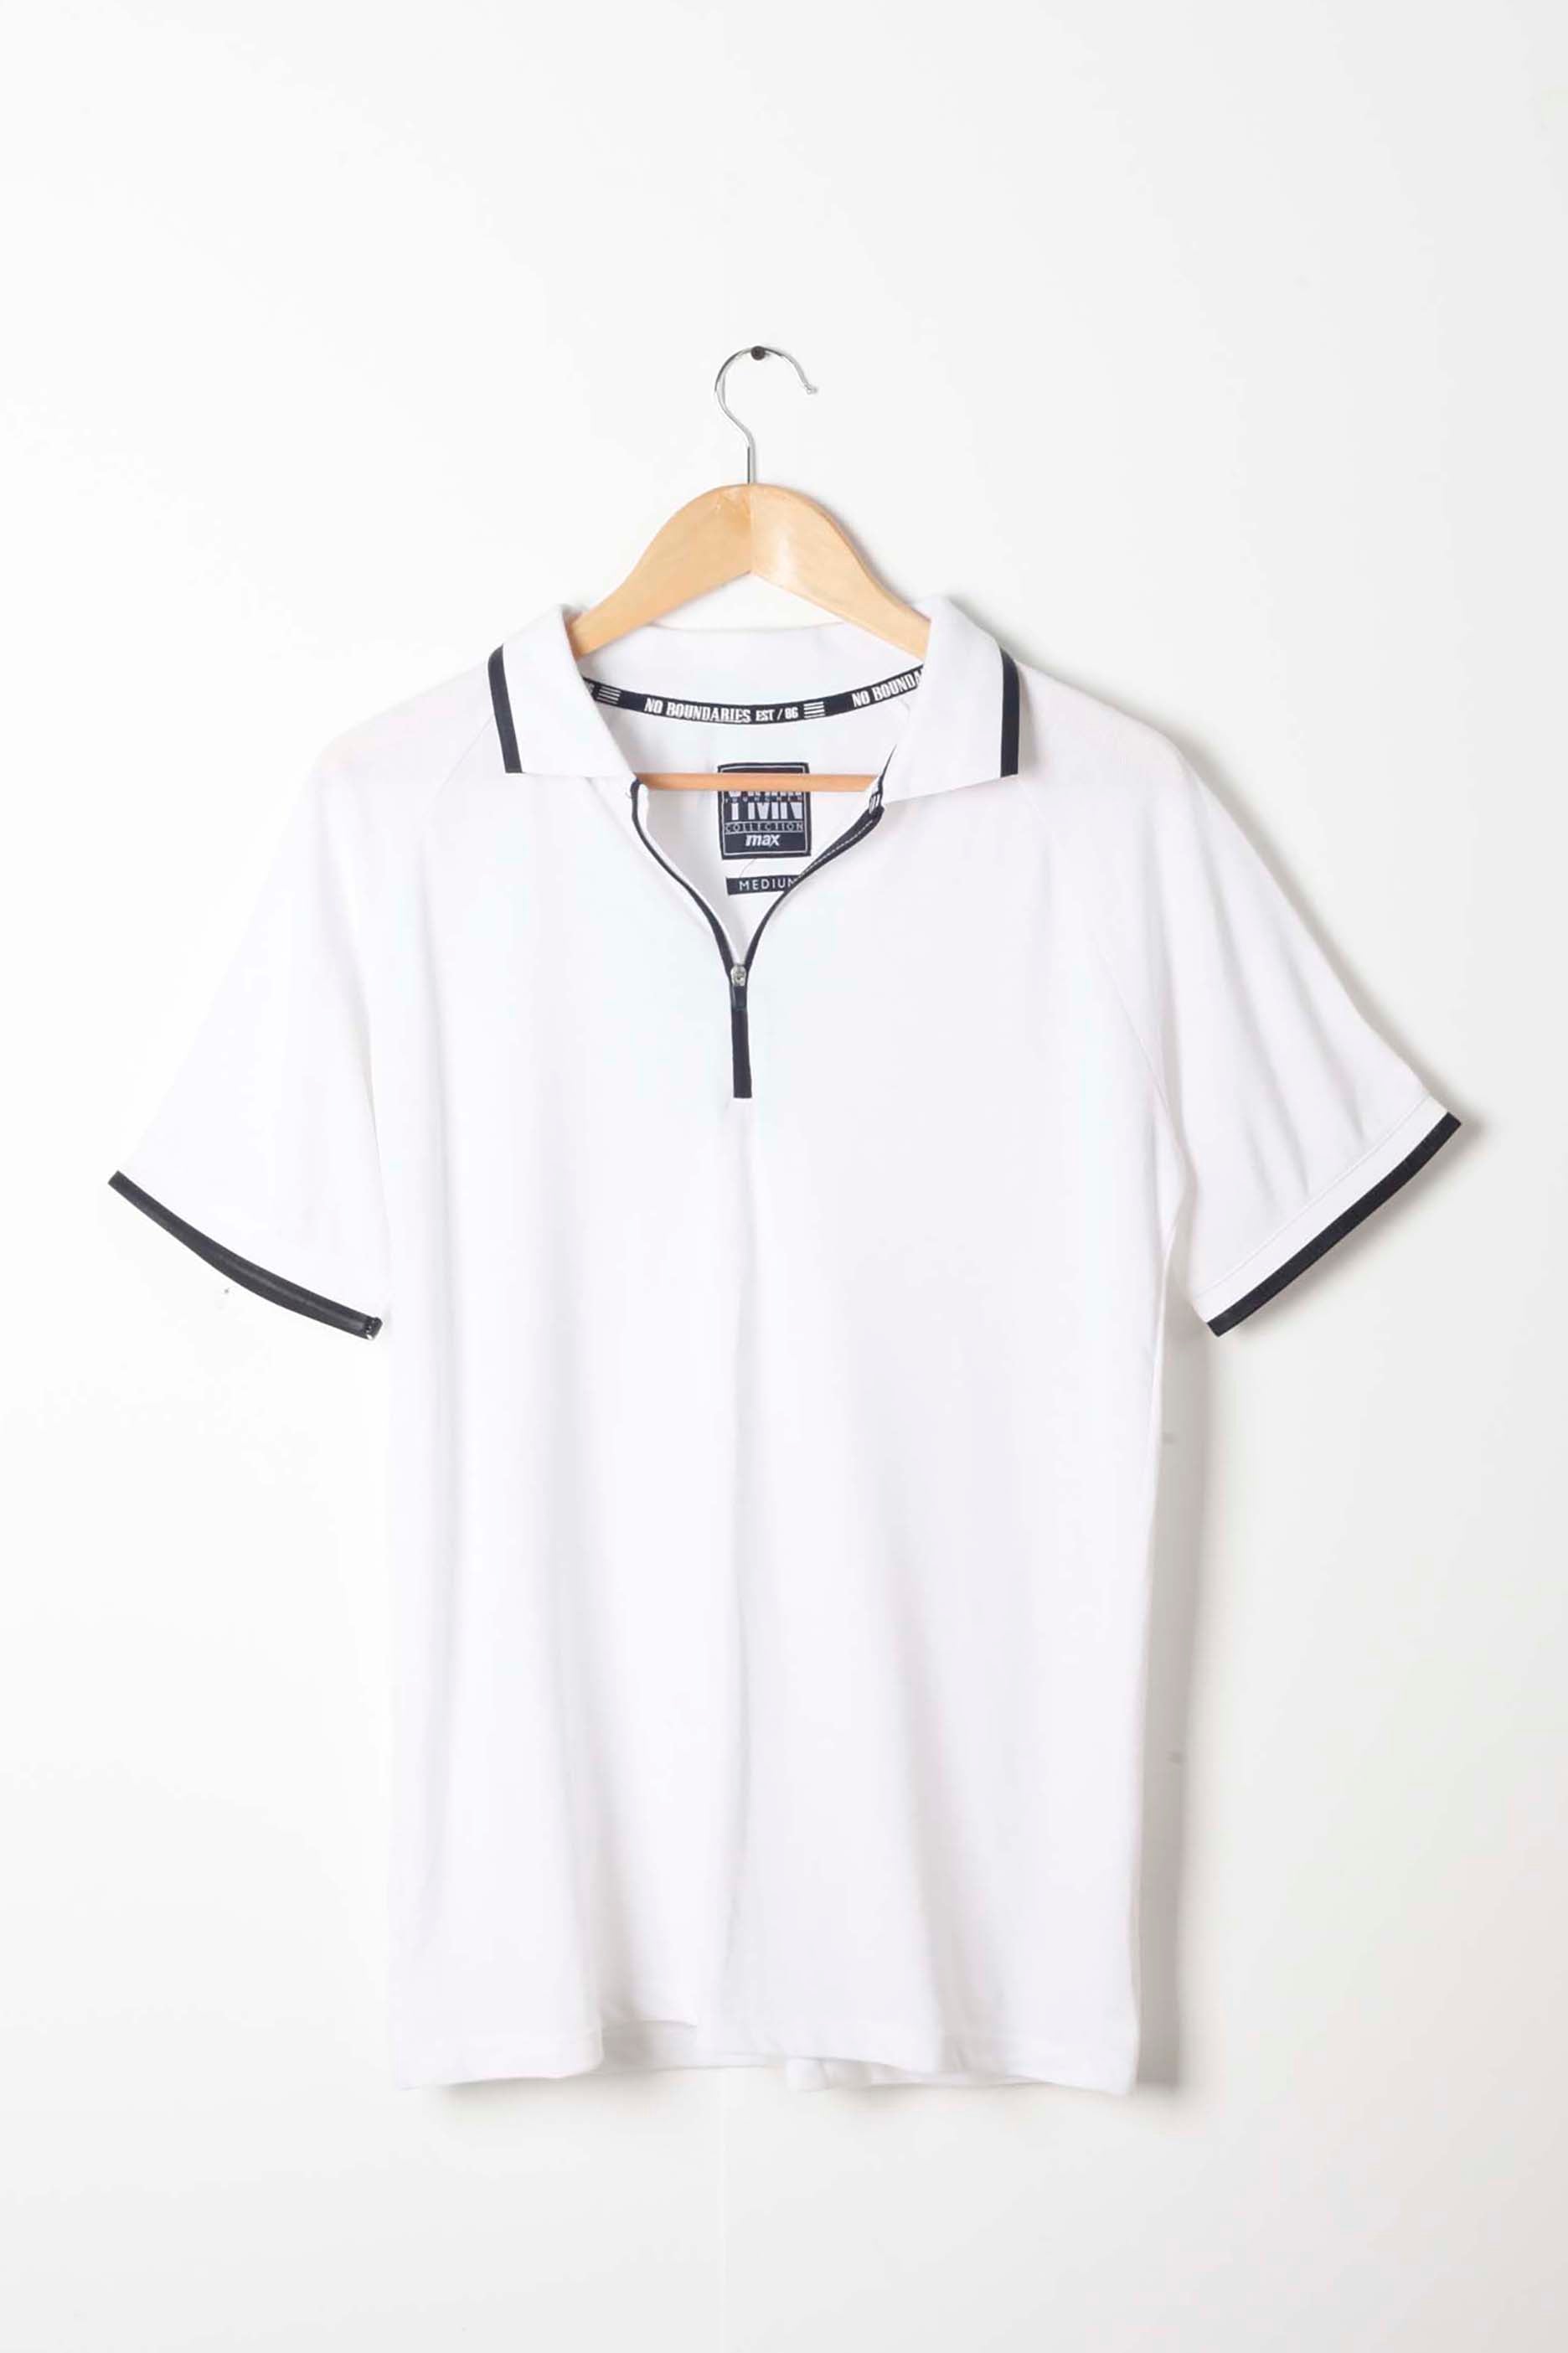 Mens White Polo Shirt with Black Trim (Medium)